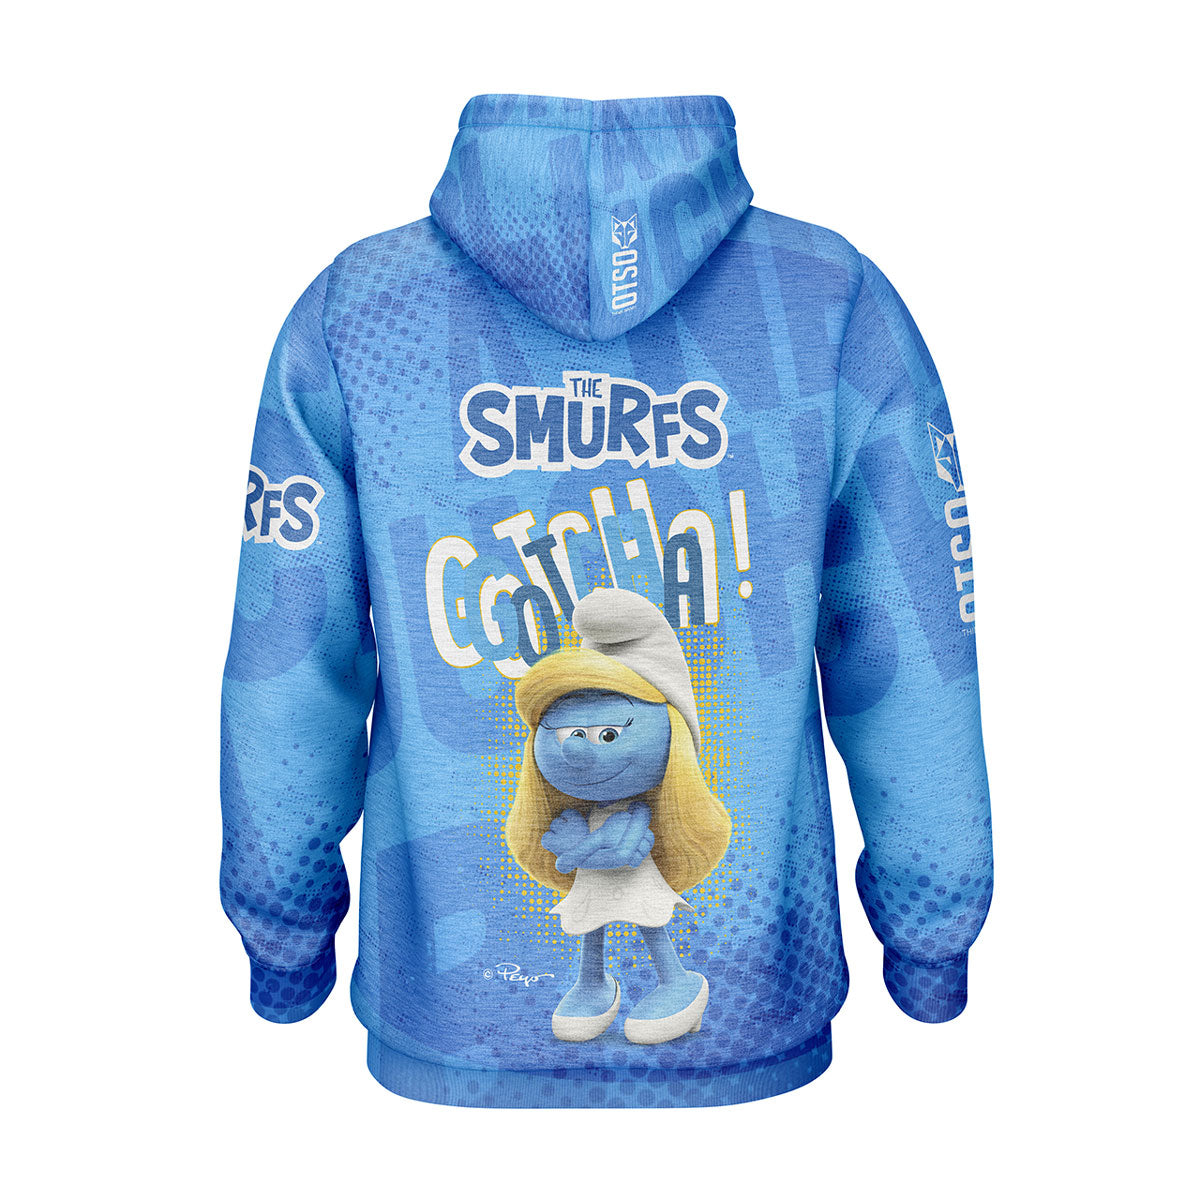 Sudadera - Smurfs We Smurf You!